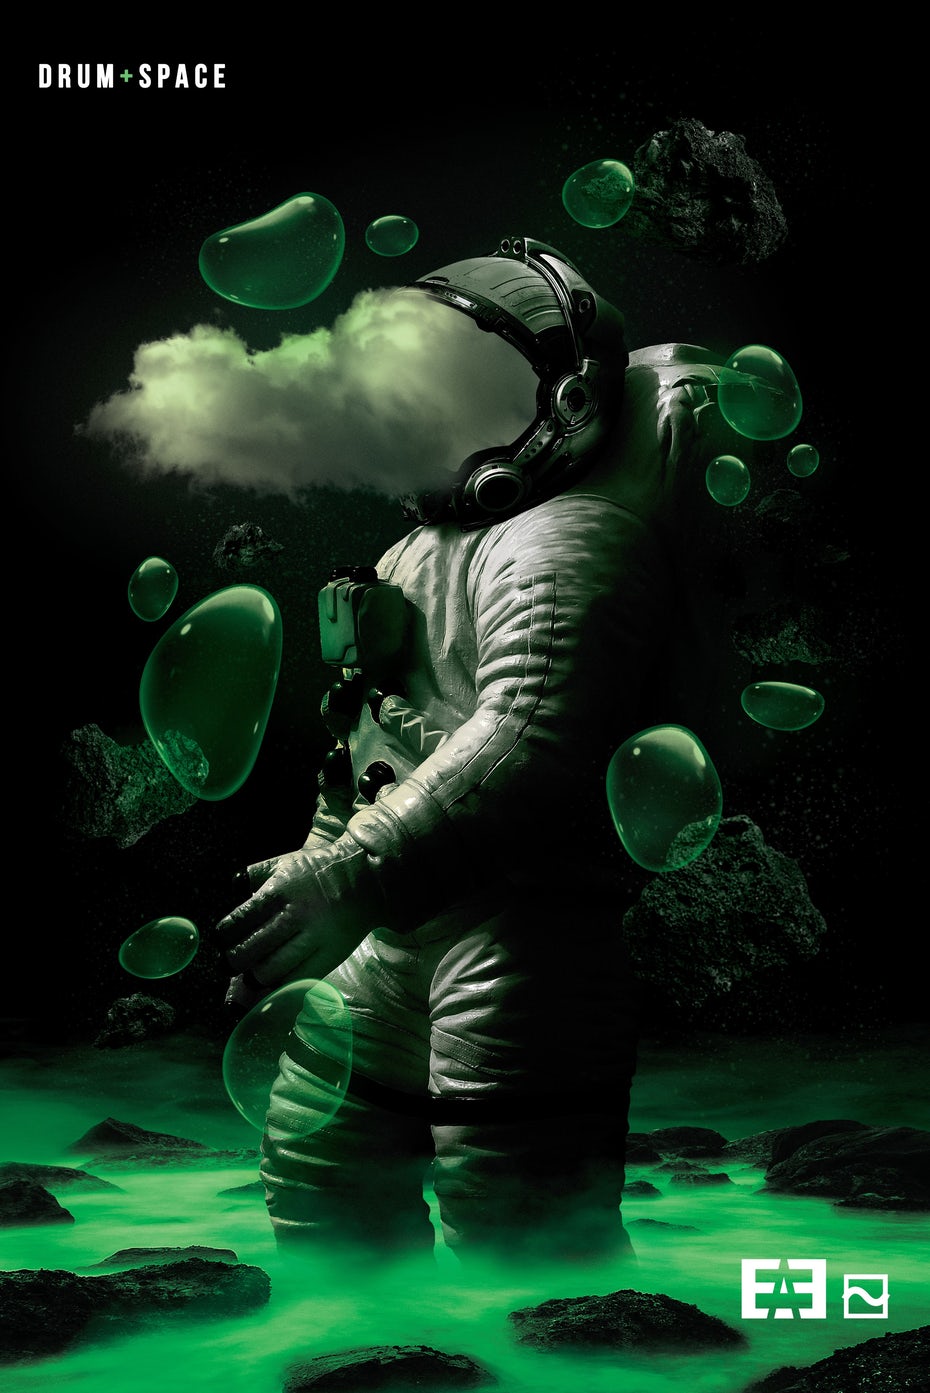  Плакат "Барабан и космос" 